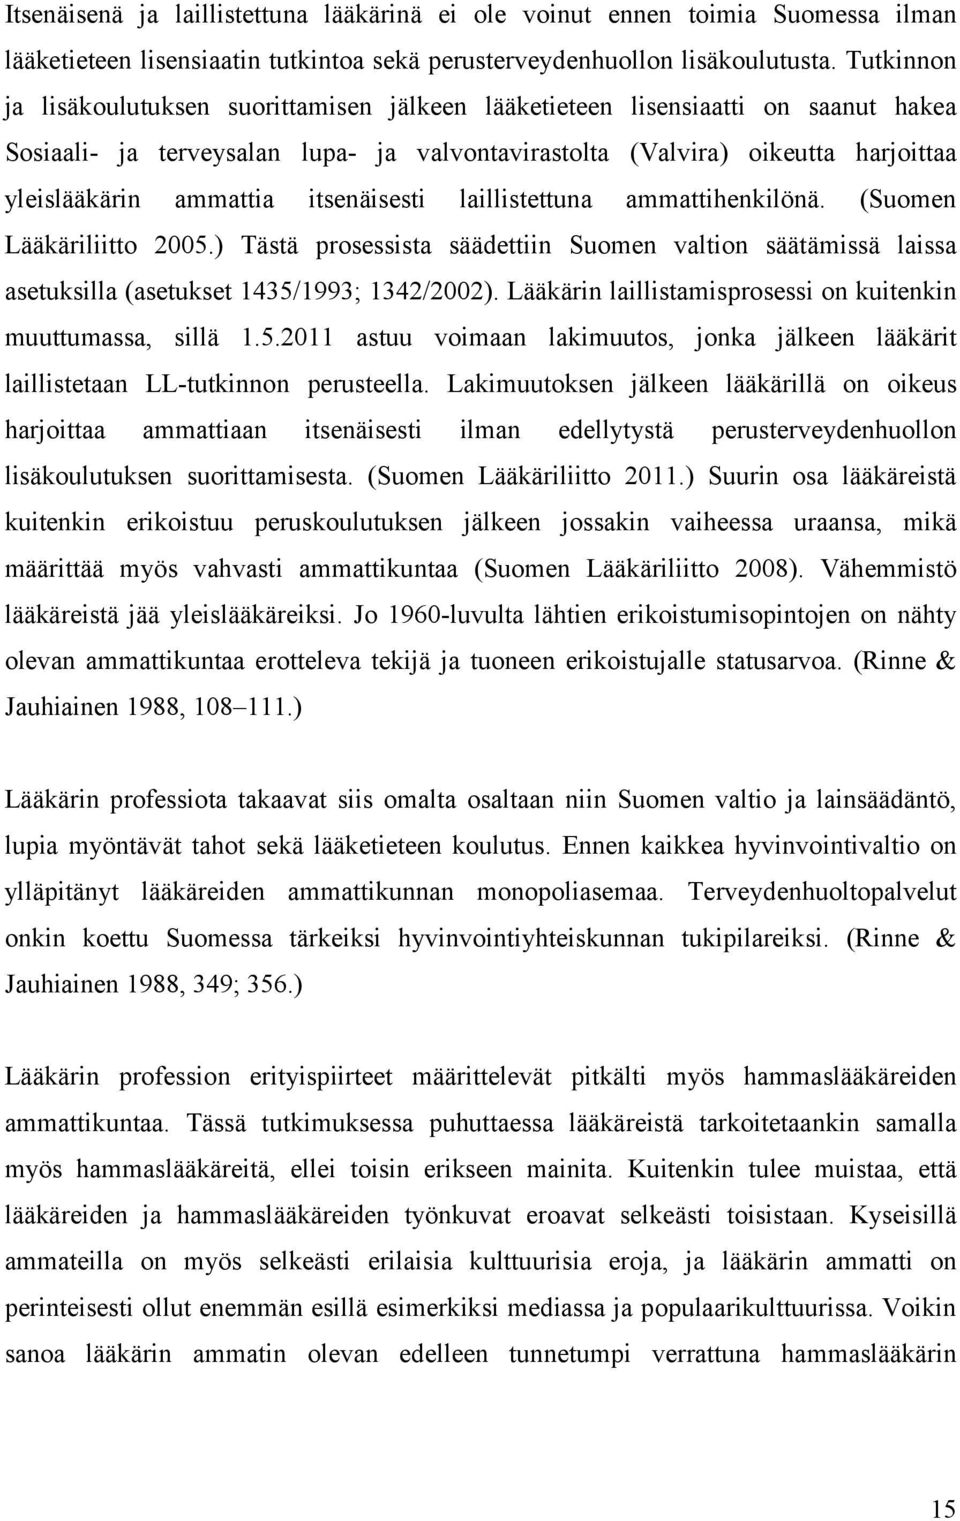 itsenäisesti laillistettuna ammattihenkilönä. (Suomen Lääkäriliitto 2005.) Tästä prosessista säädettiin Suomen valtion säätämissä laissa asetuksilla (asetukset 1435/1993; 1342/2002).